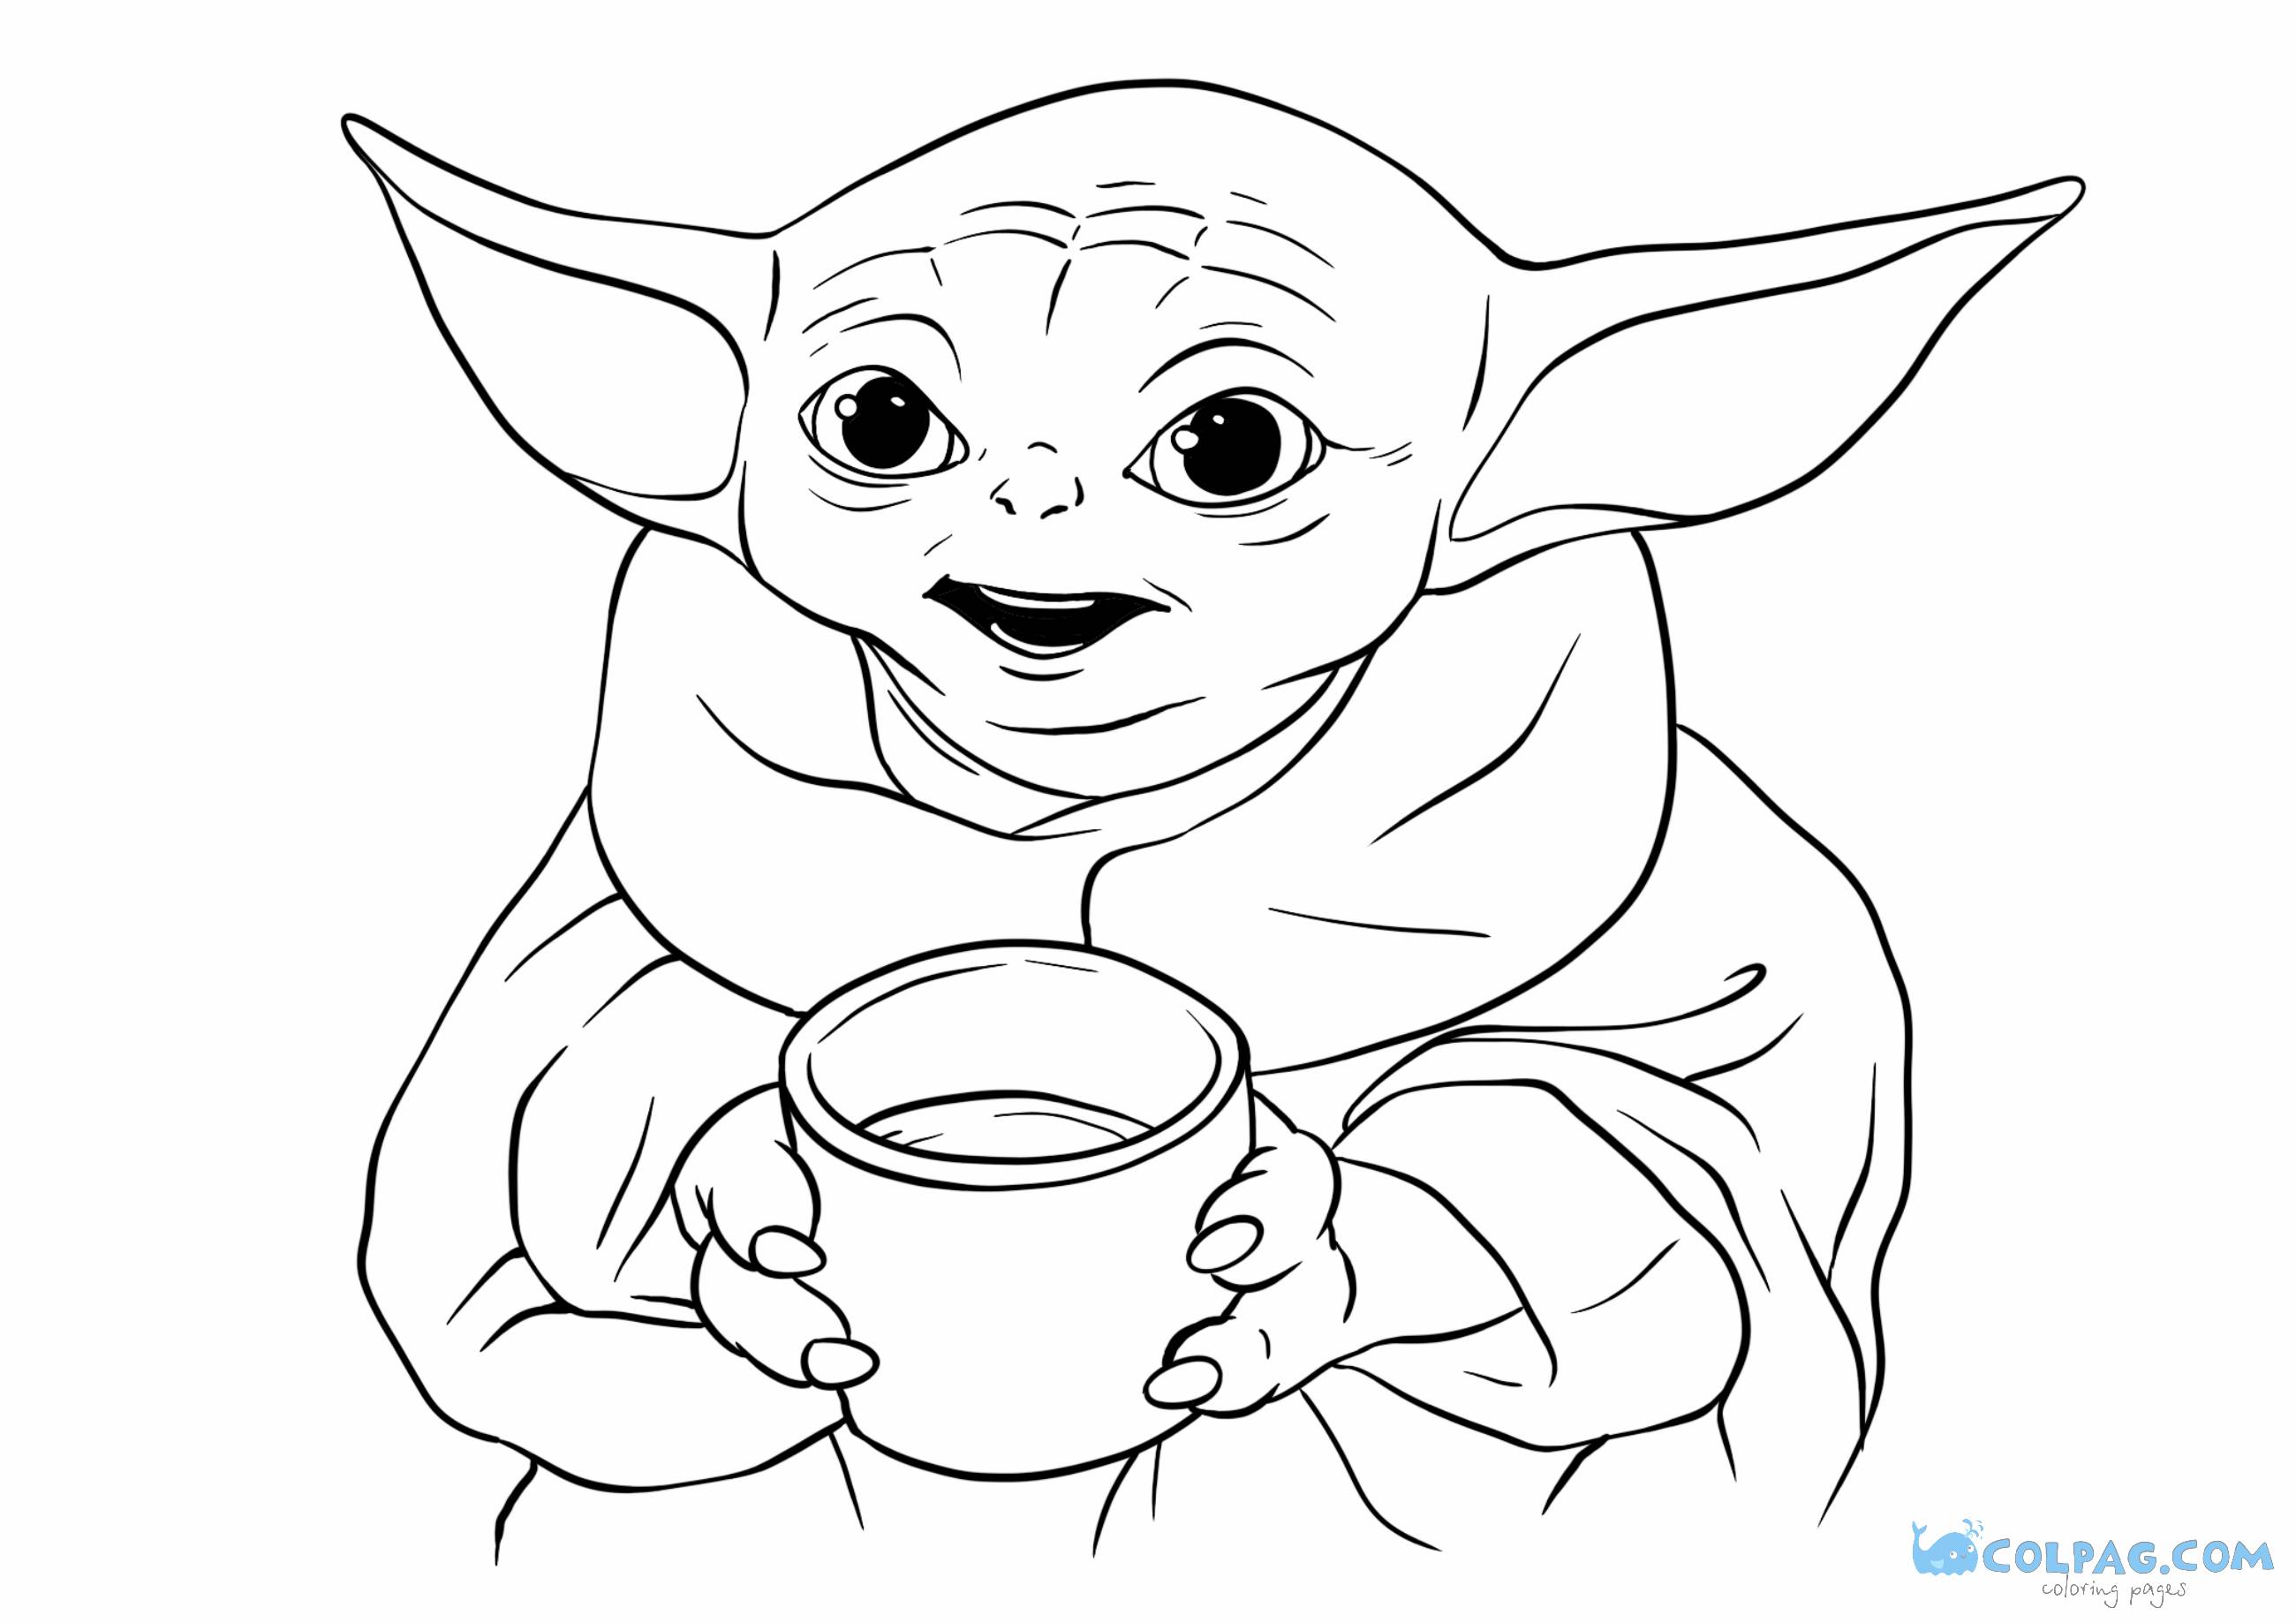 Baby Yoda novos desenhos para colorir e imprimir